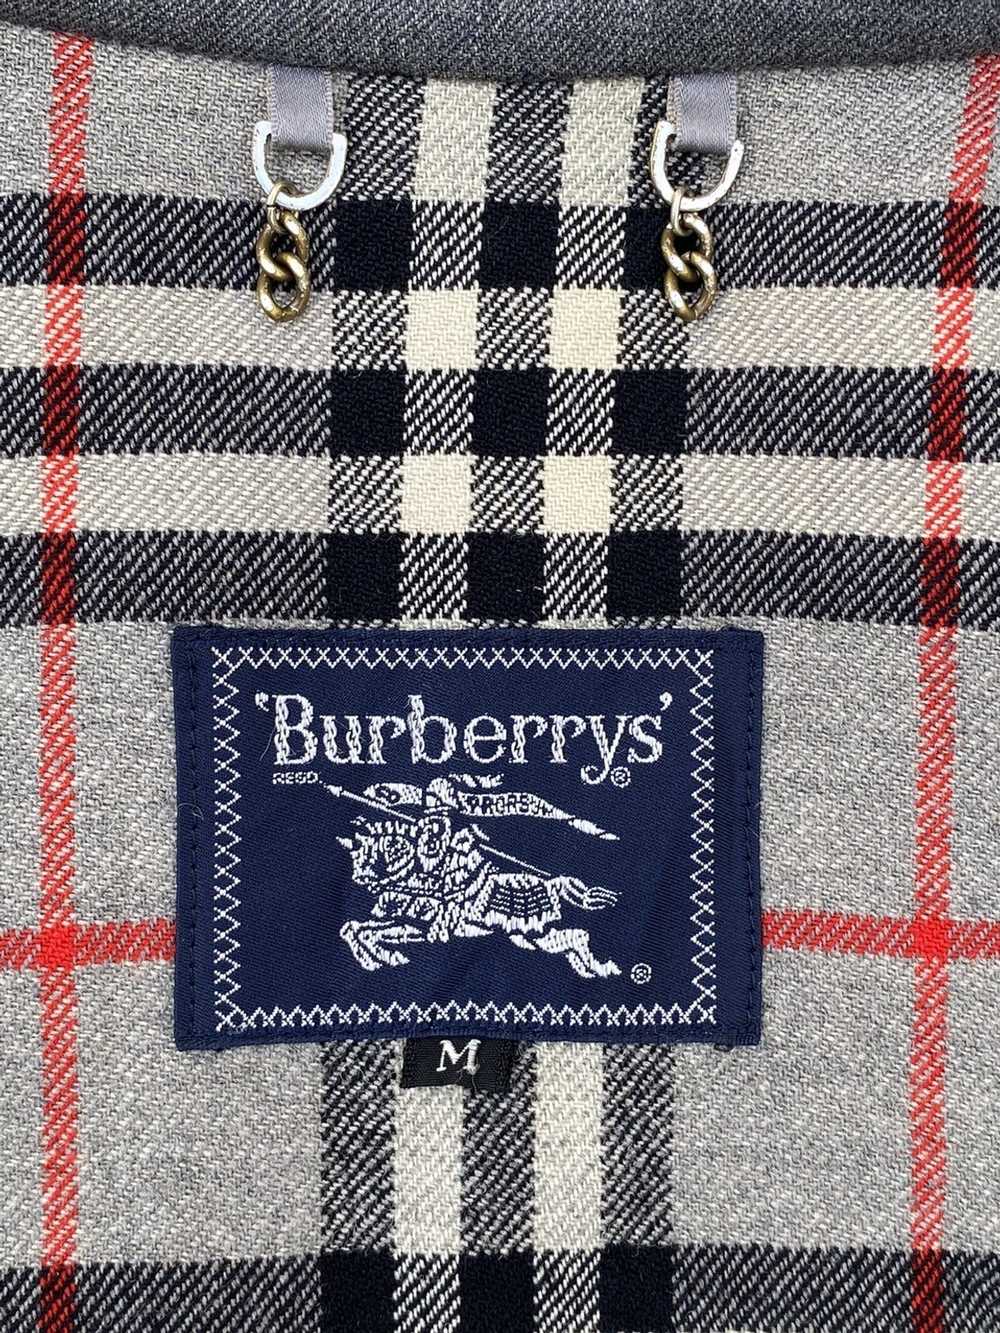 Burberry Prorsum × Vintage VINTAGE BURBERRYS GRAY… - image 10